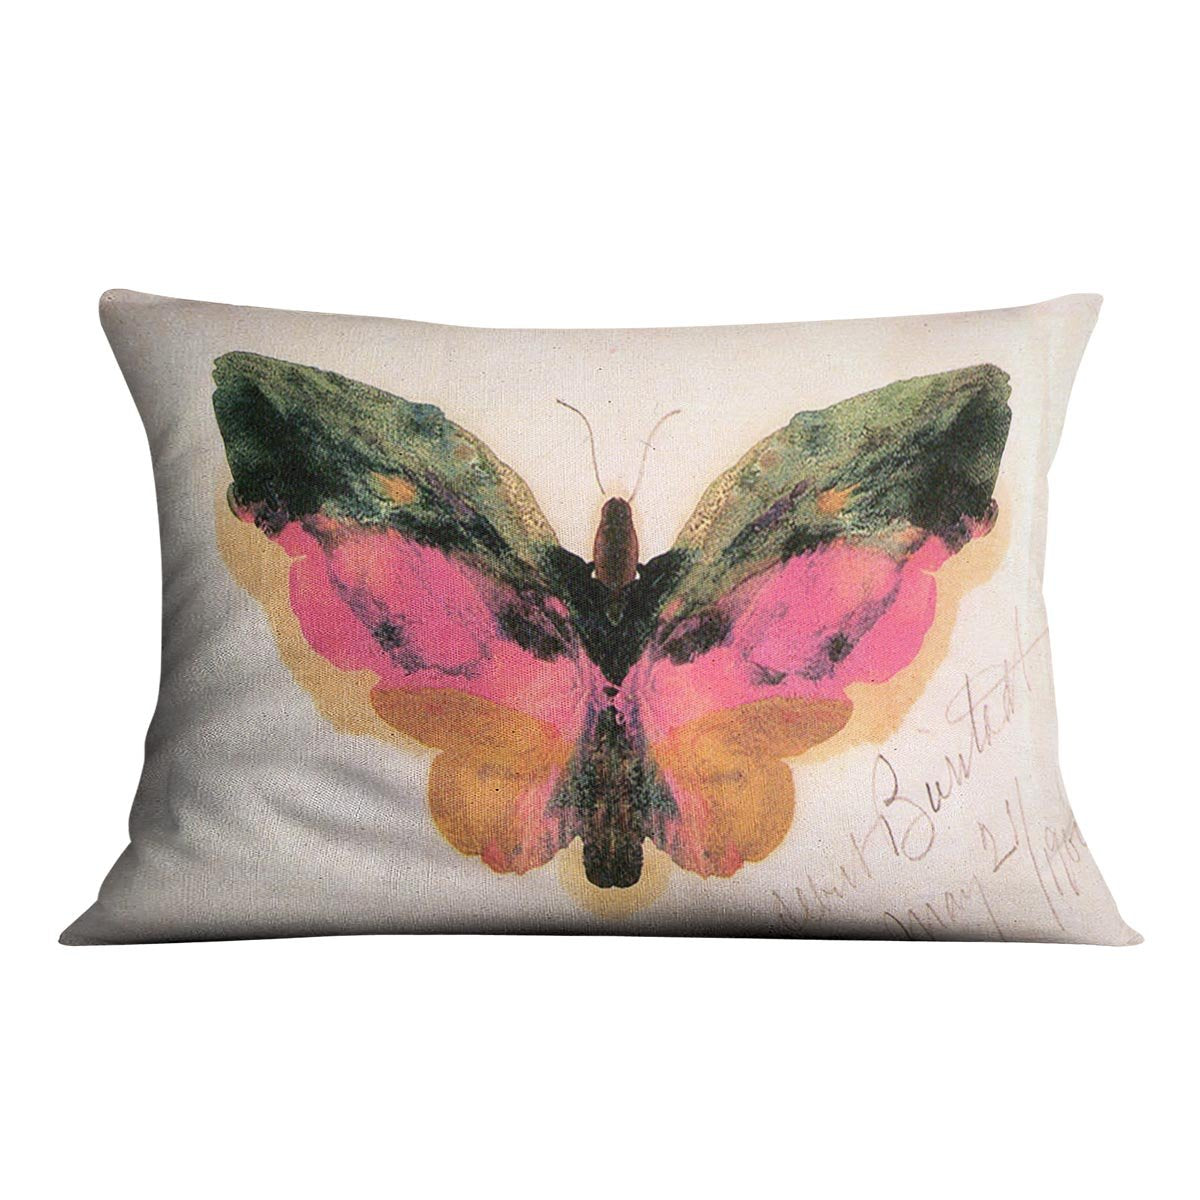 Butterfly by Bierstadt Cushion - Canvas Art Rocks - 4